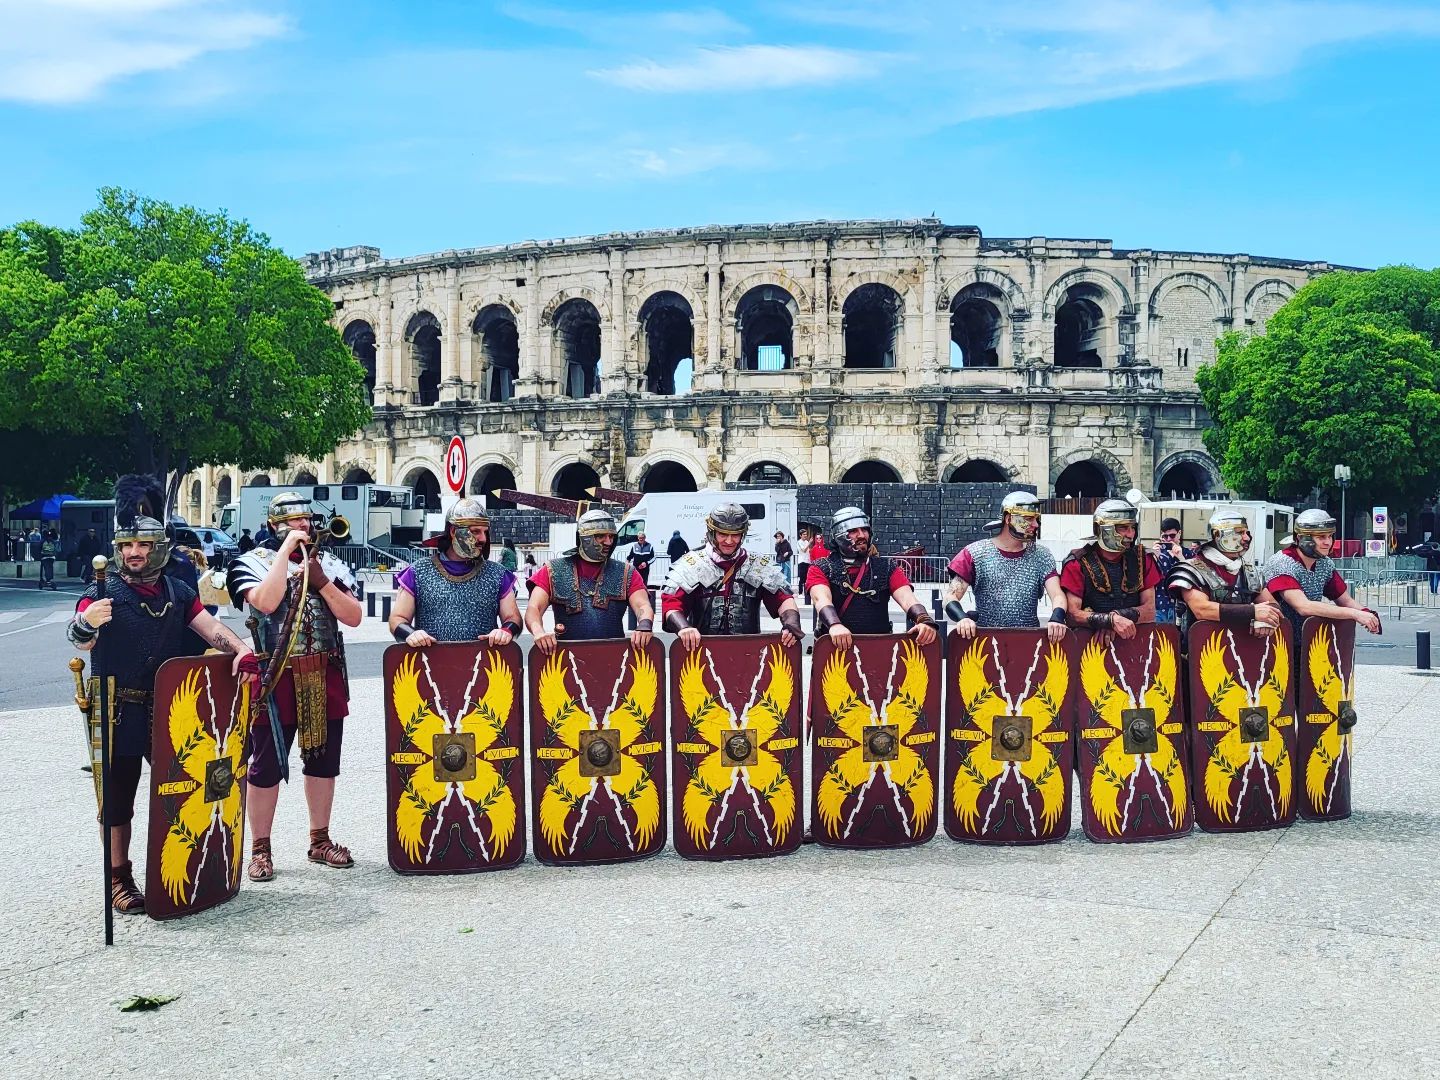 C'est parti pour 3 jours des grands jeux romains !!!
#villedenimes 
#romanité 
#grandsjeuxromains